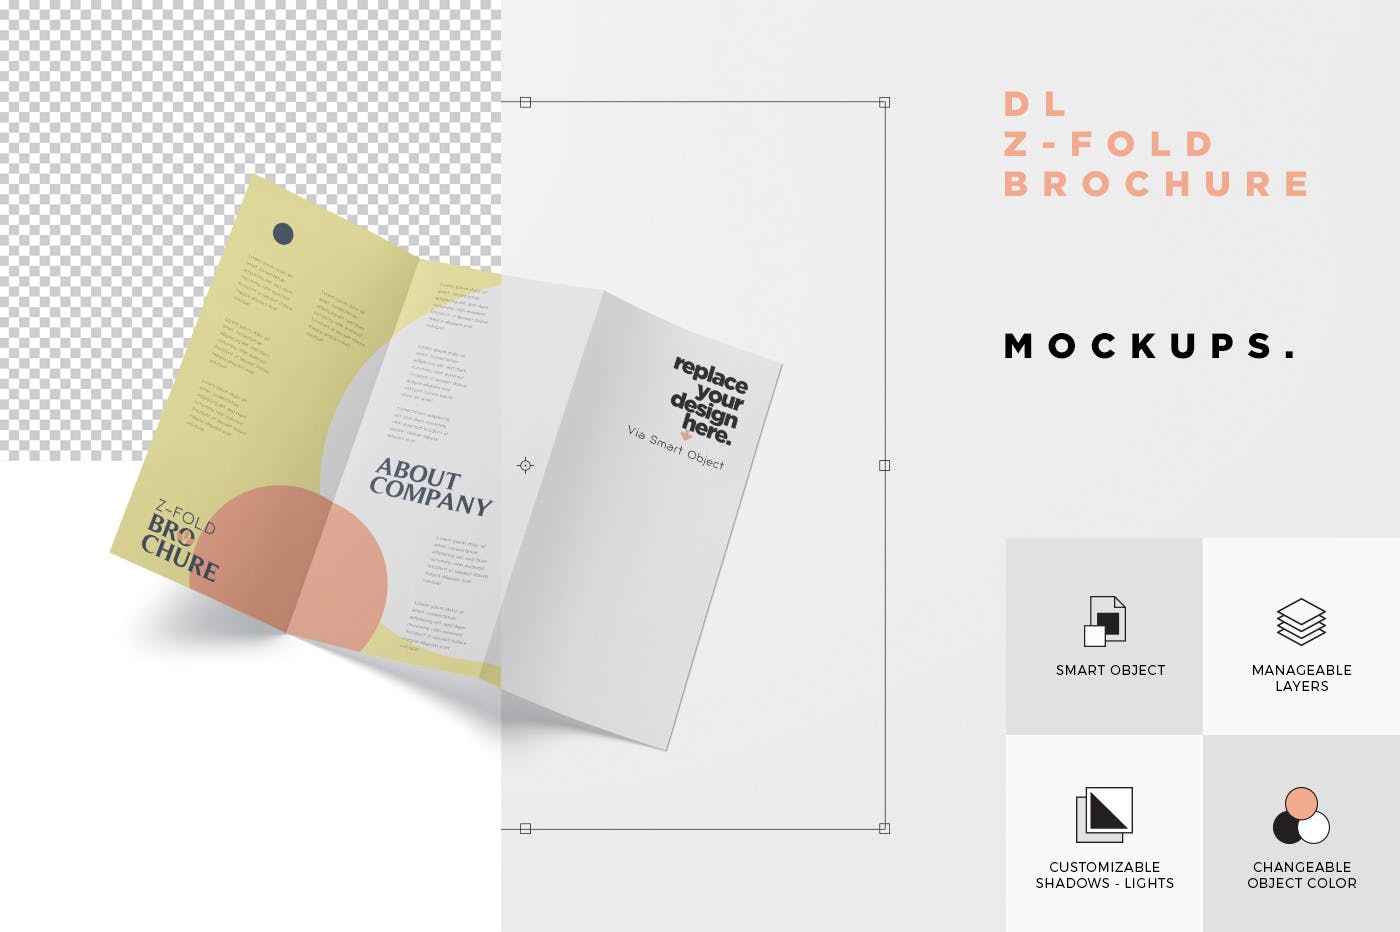 三折页设计风格企业传单/宣传单设计图样机非凡图库精选 DL Z-Fold Brochure Mockup – 99 x 210 mm Size插图(7)